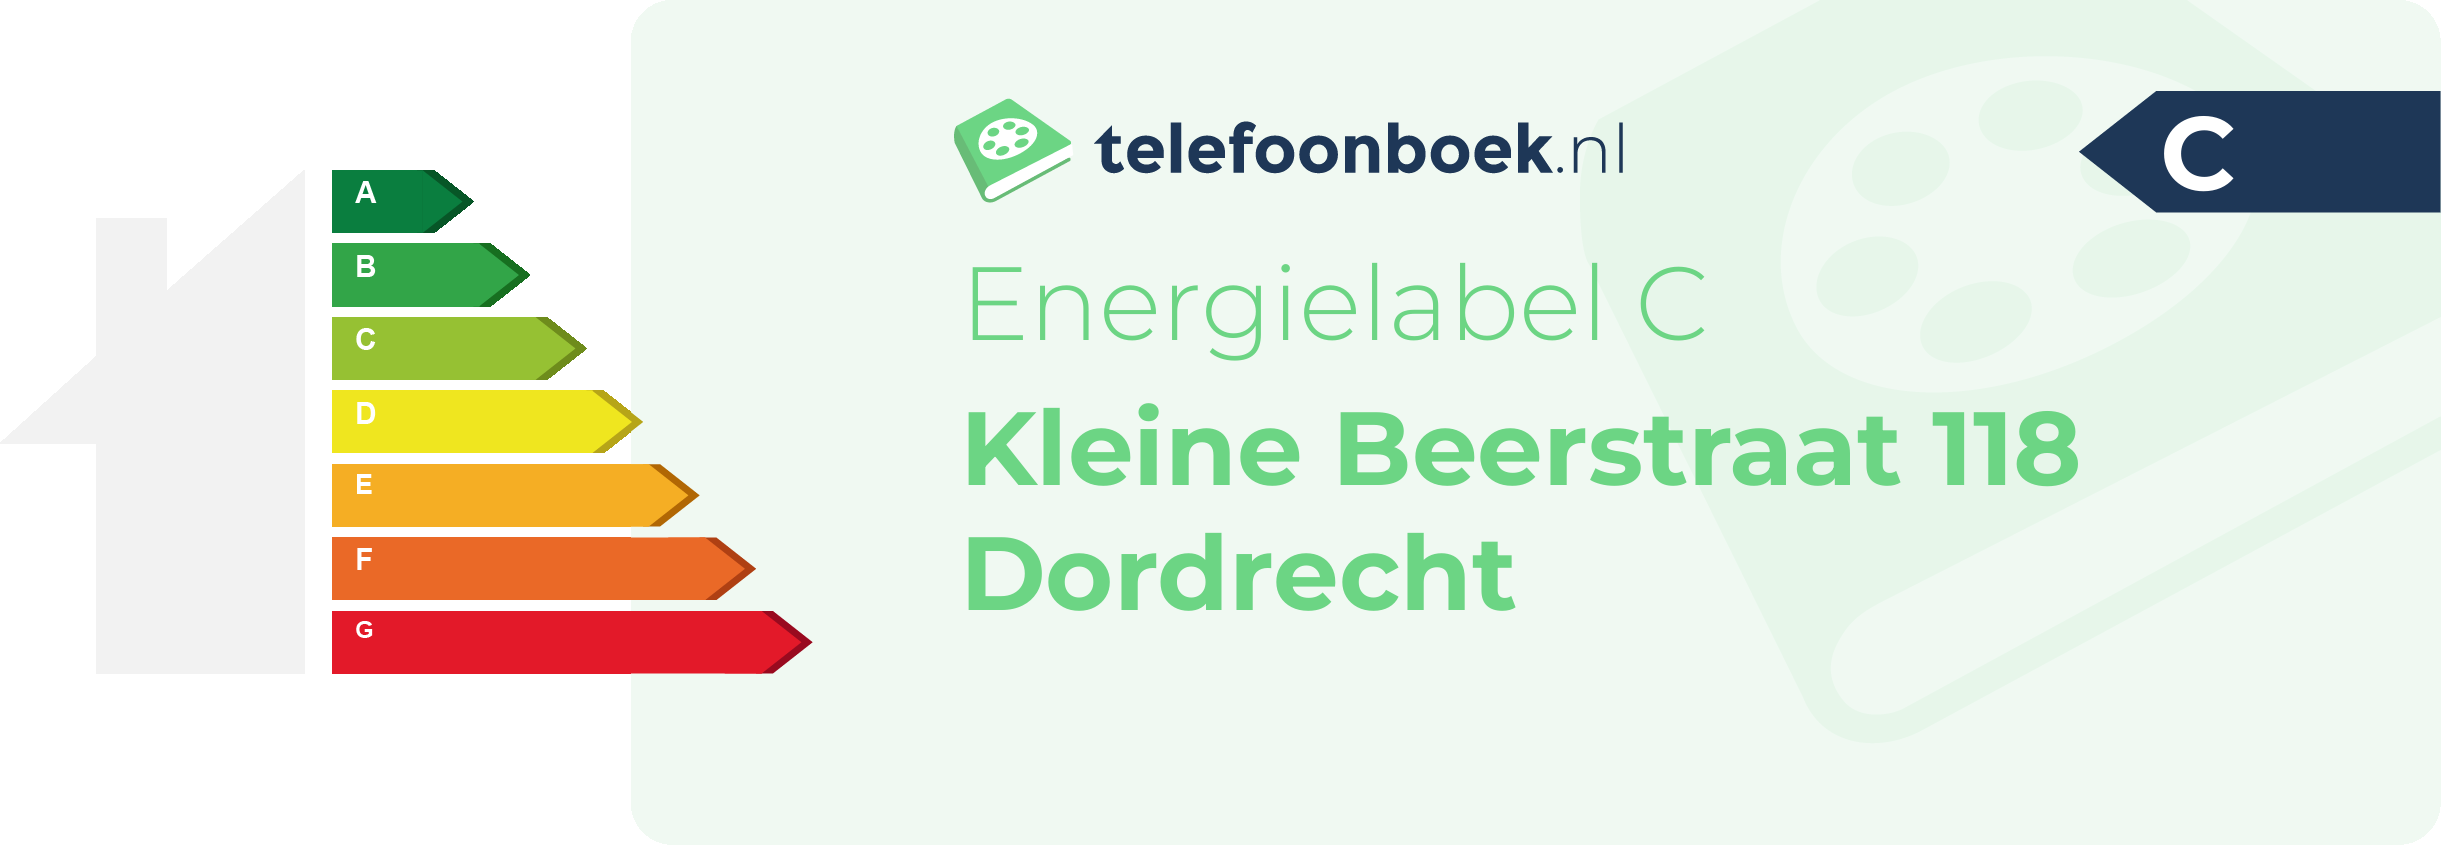 Energielabel Kleine Beerstraat 118 Dordrecht